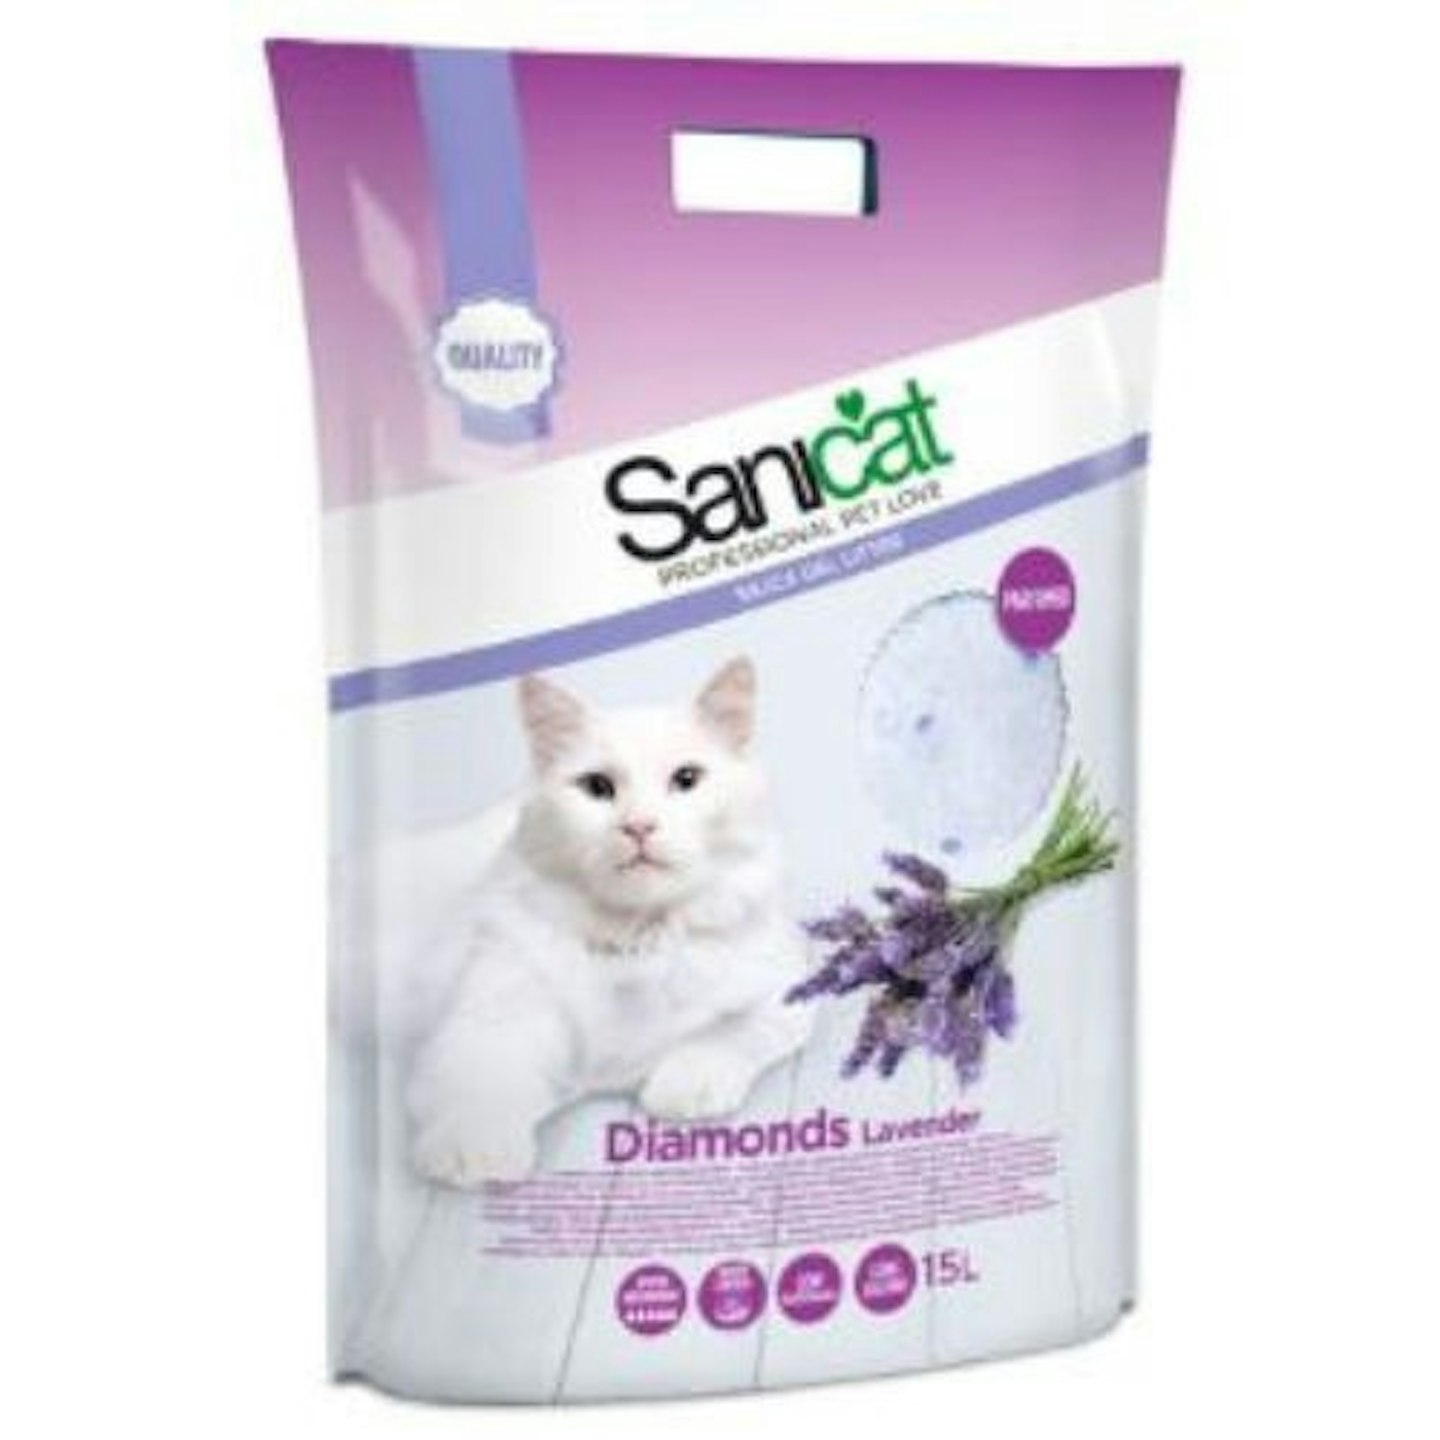 Sanicat Diamonds Lavender Scent Silica Gel Granule Cat Litter